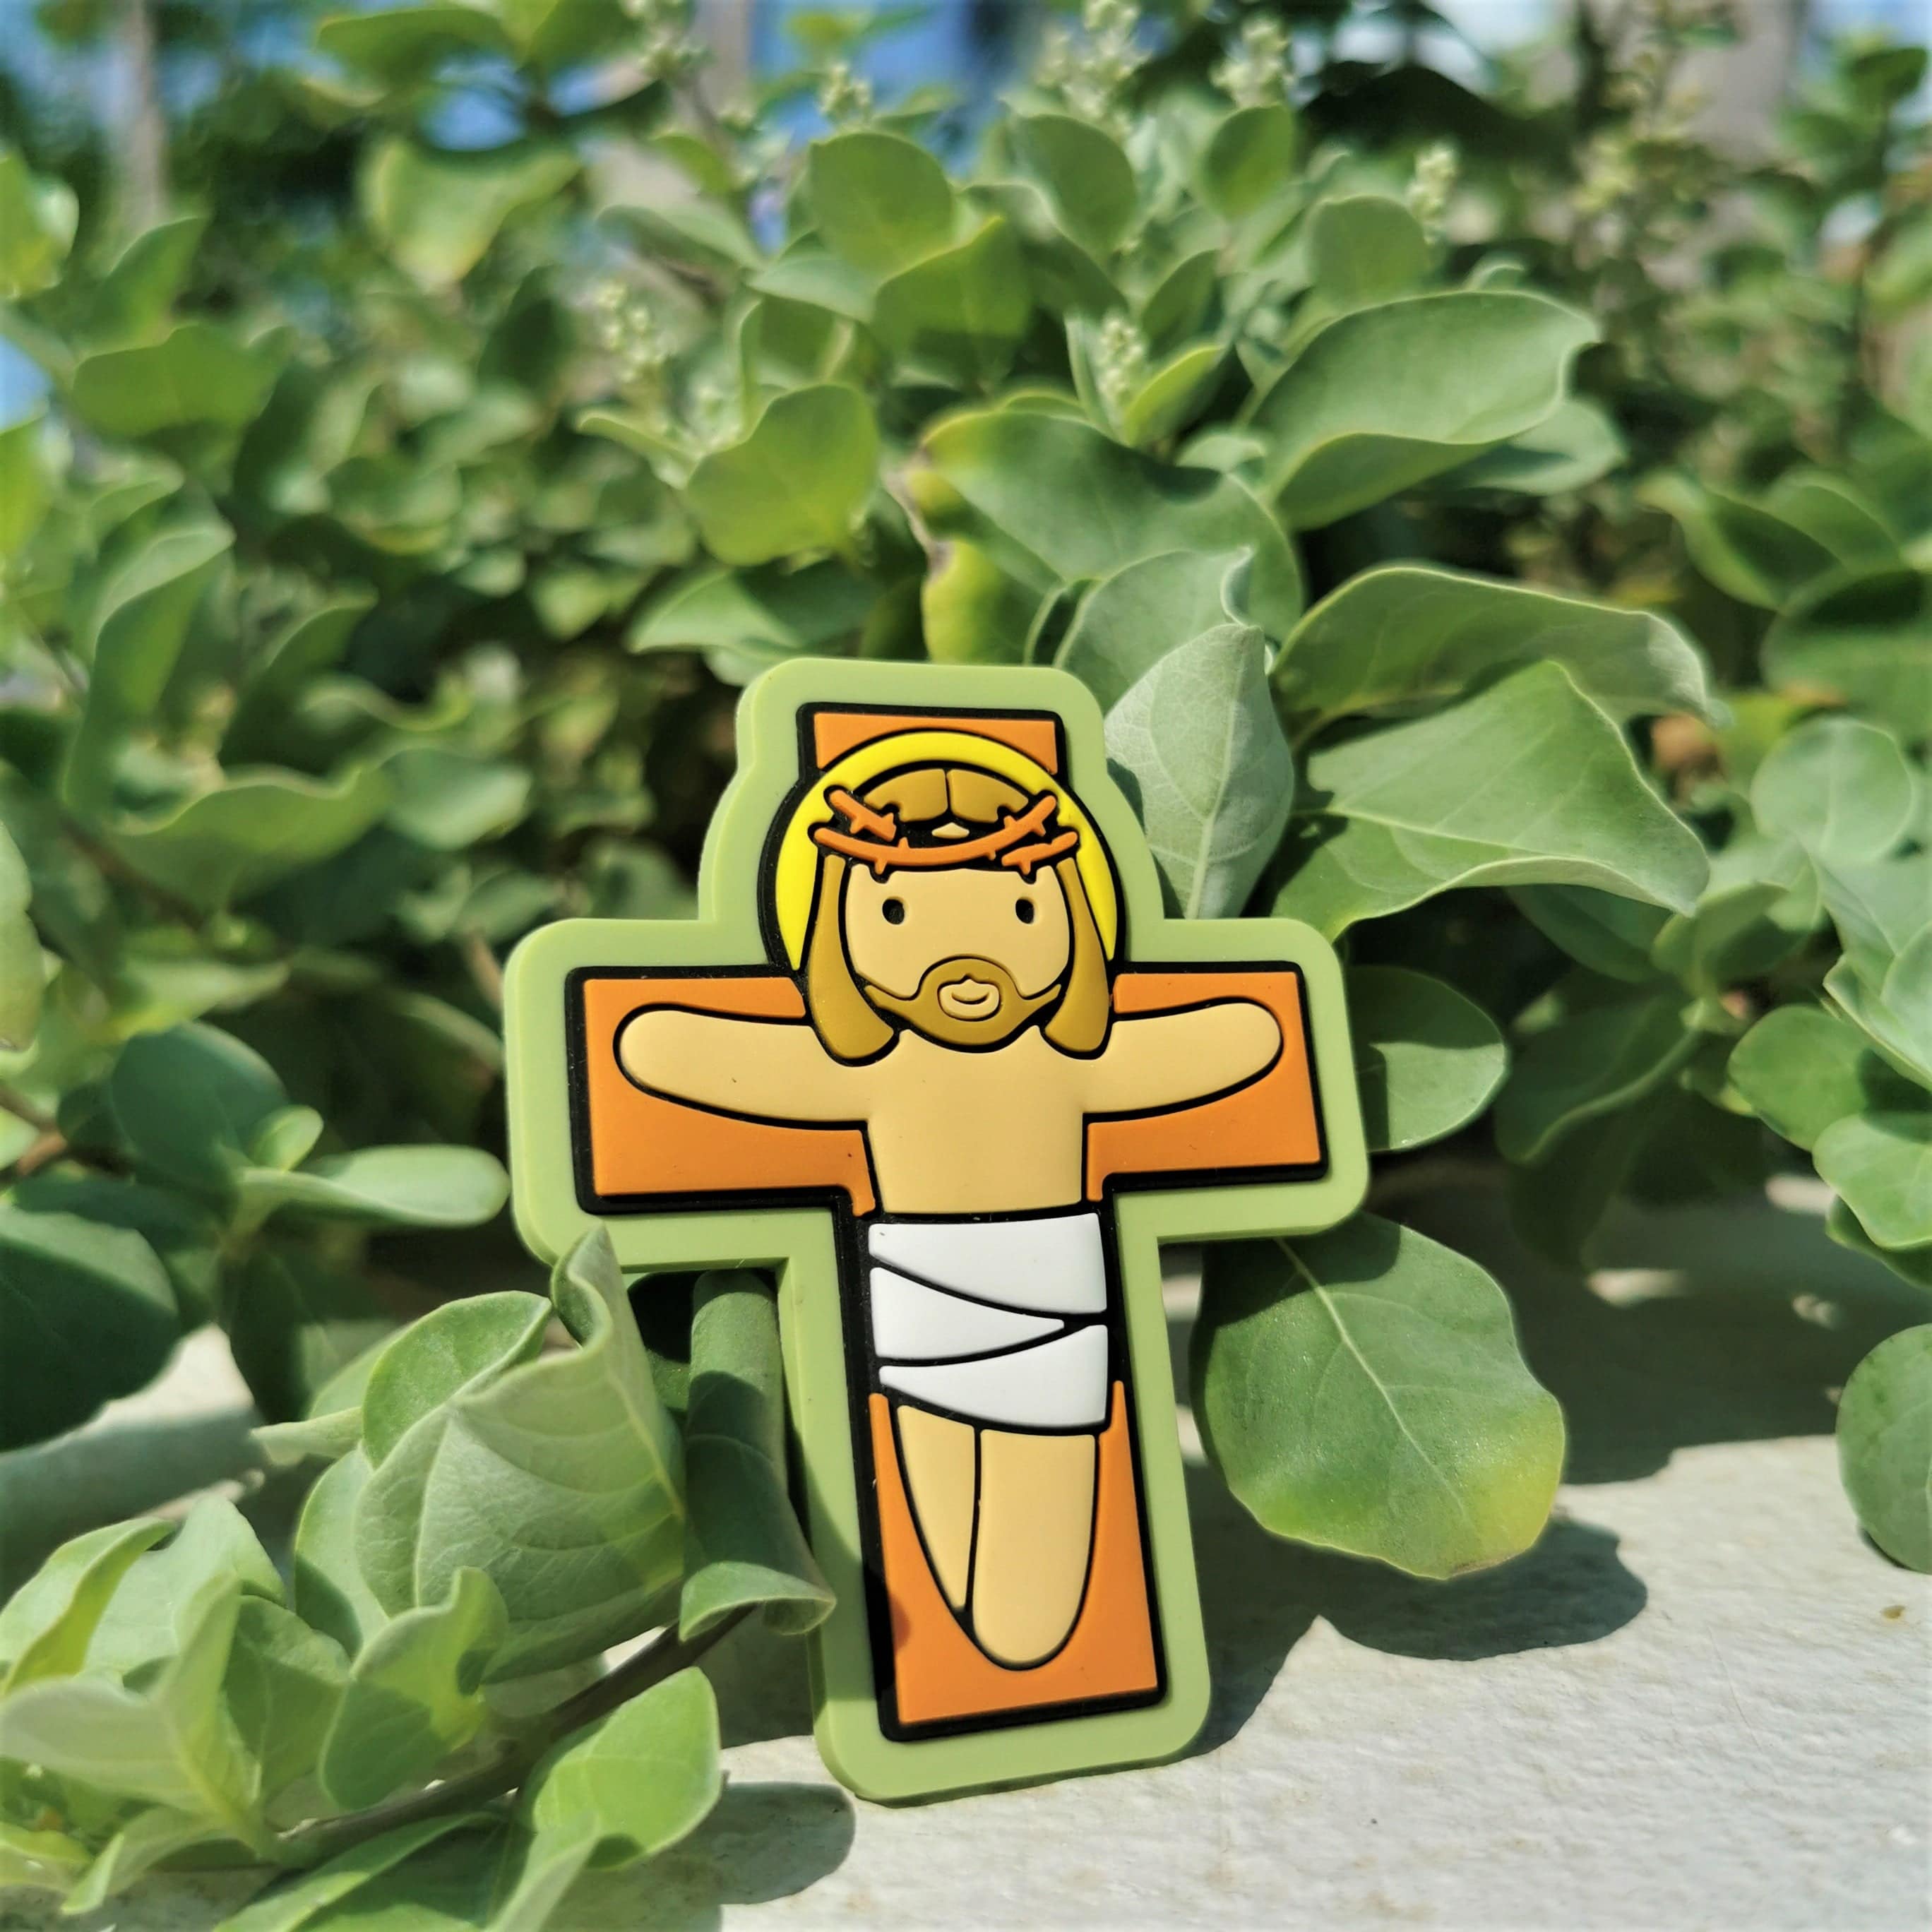 Jesus on the Cross Fridge Magnet - Little Drops of Water